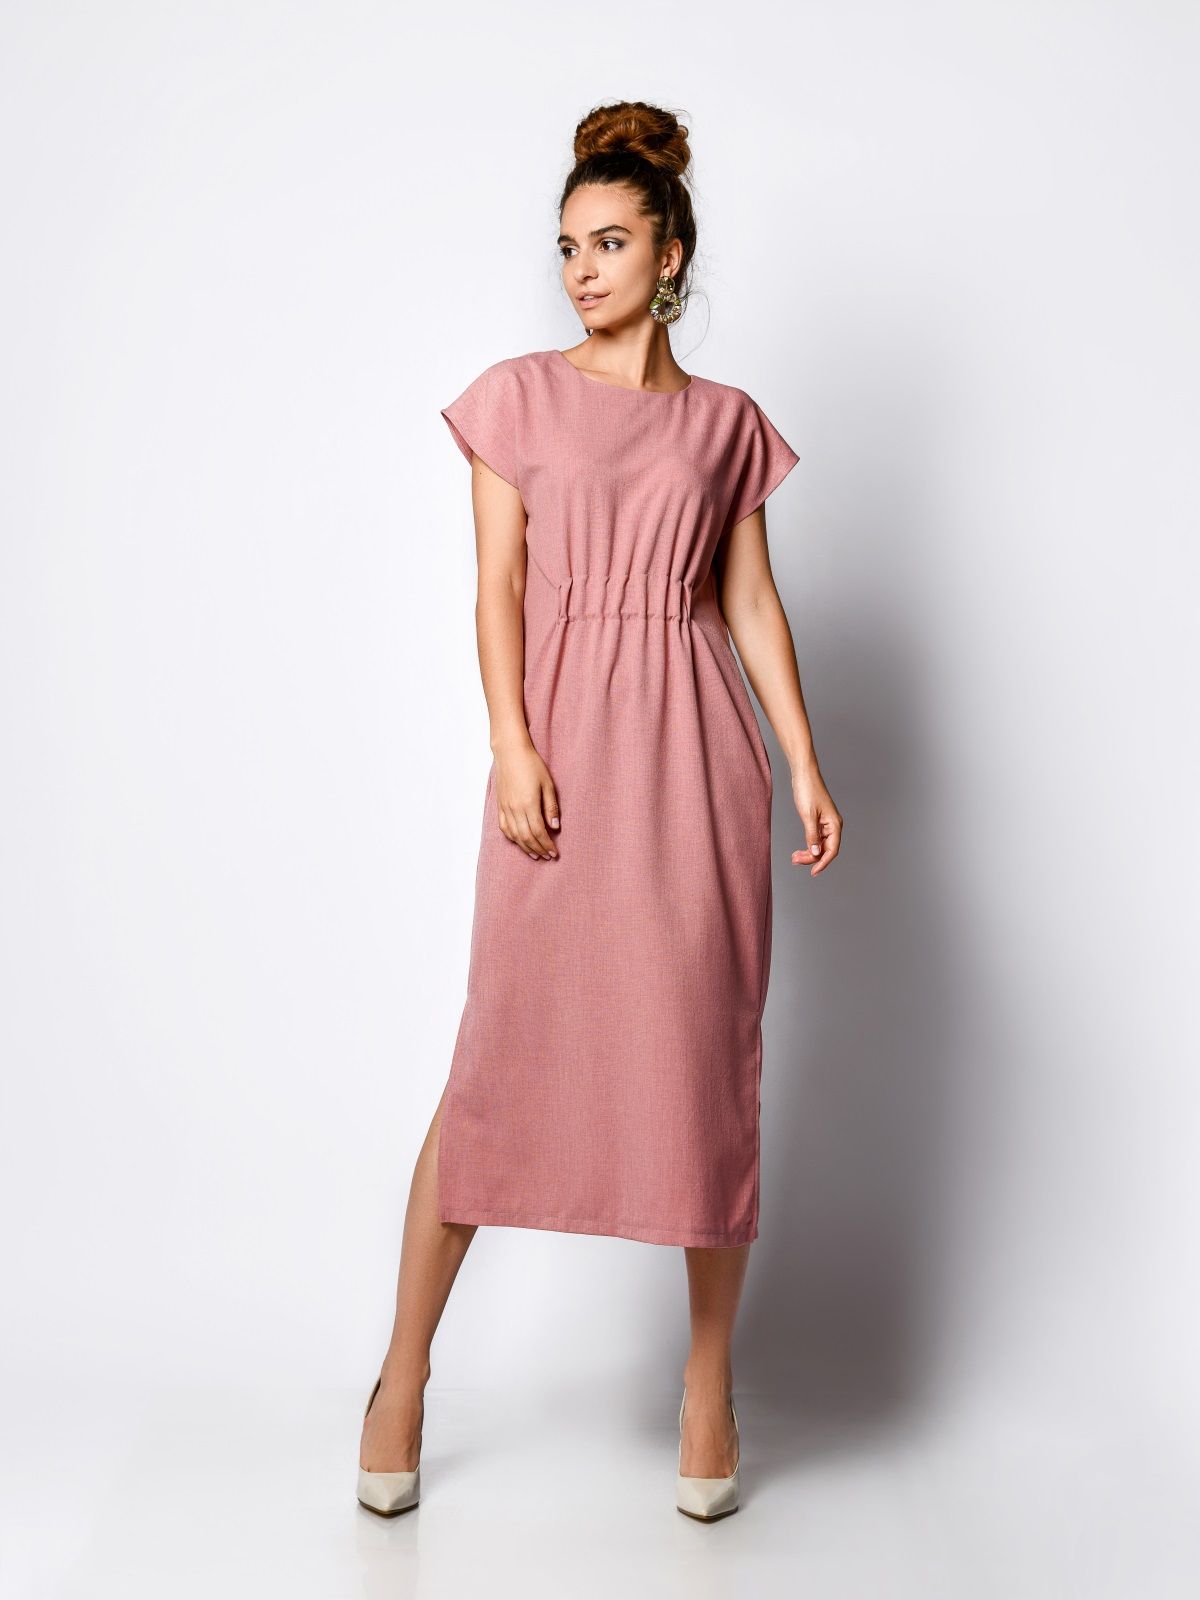 Платье женское AM One 1702/1 розовое 50 RU